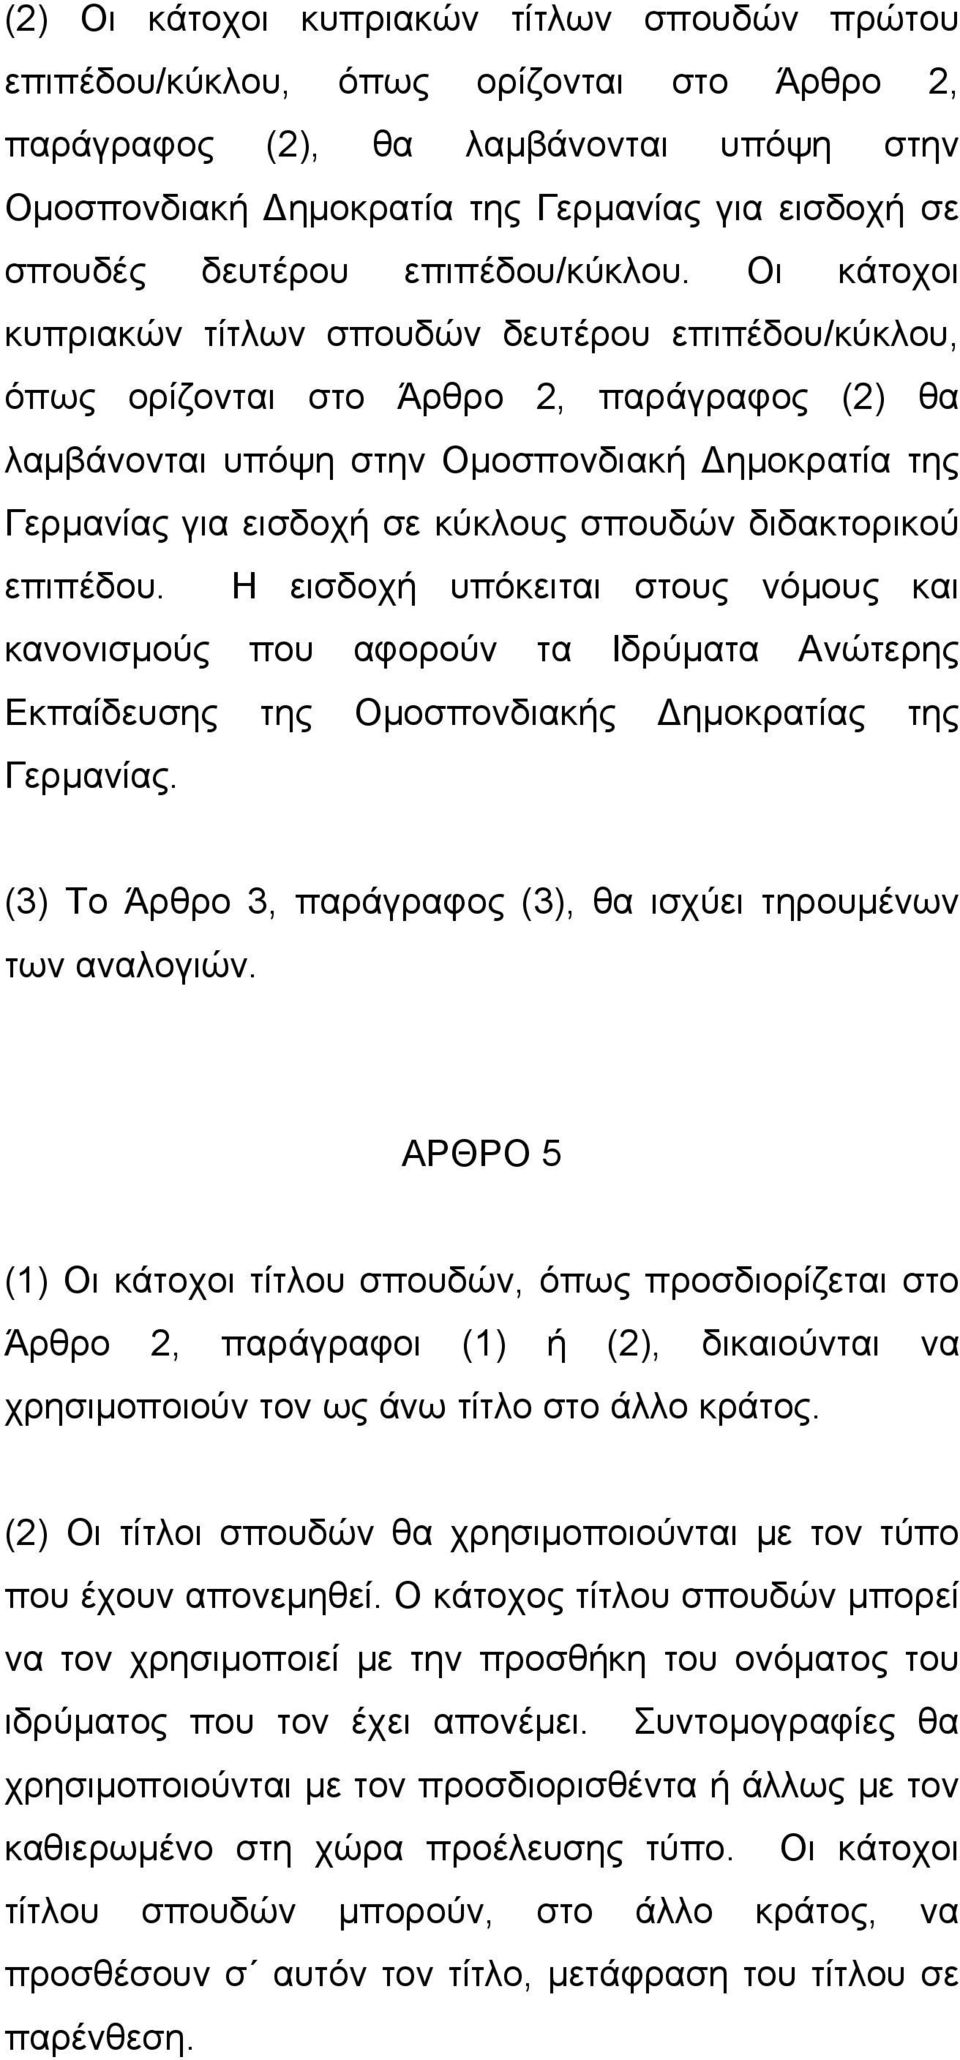 Οι κάτοχοι κυπριακών τίτλων σπουδών δευτέρου επιπέδου/κύκλου, όπως ορίζονται στο Άρθρο 2, παράγραφος (2) θα λαμβάνονται υπόψη στην Ομοσπονδιακή Δημοκρατία της Γερμανίας για εισδοχή σε κύκλους σπουδών